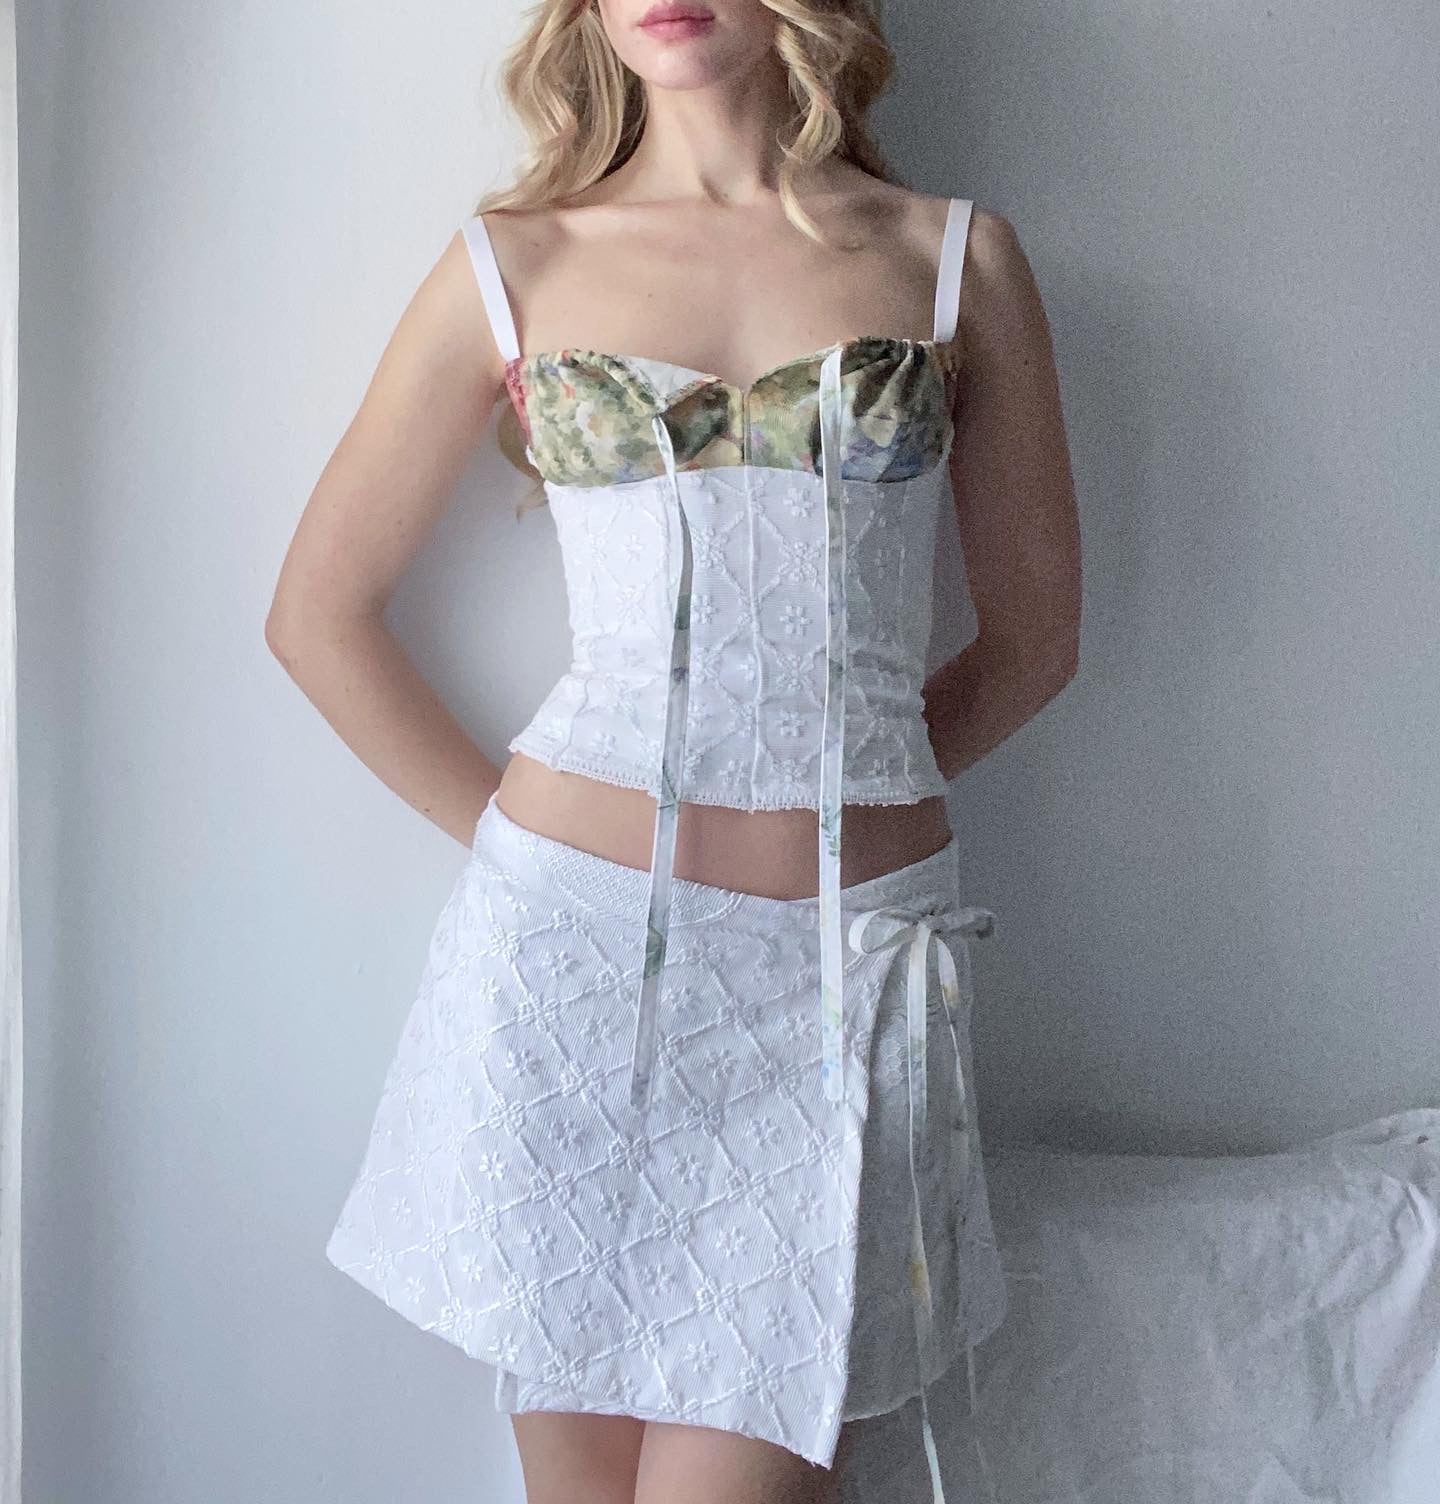 The Tapestry Skirt 2.0